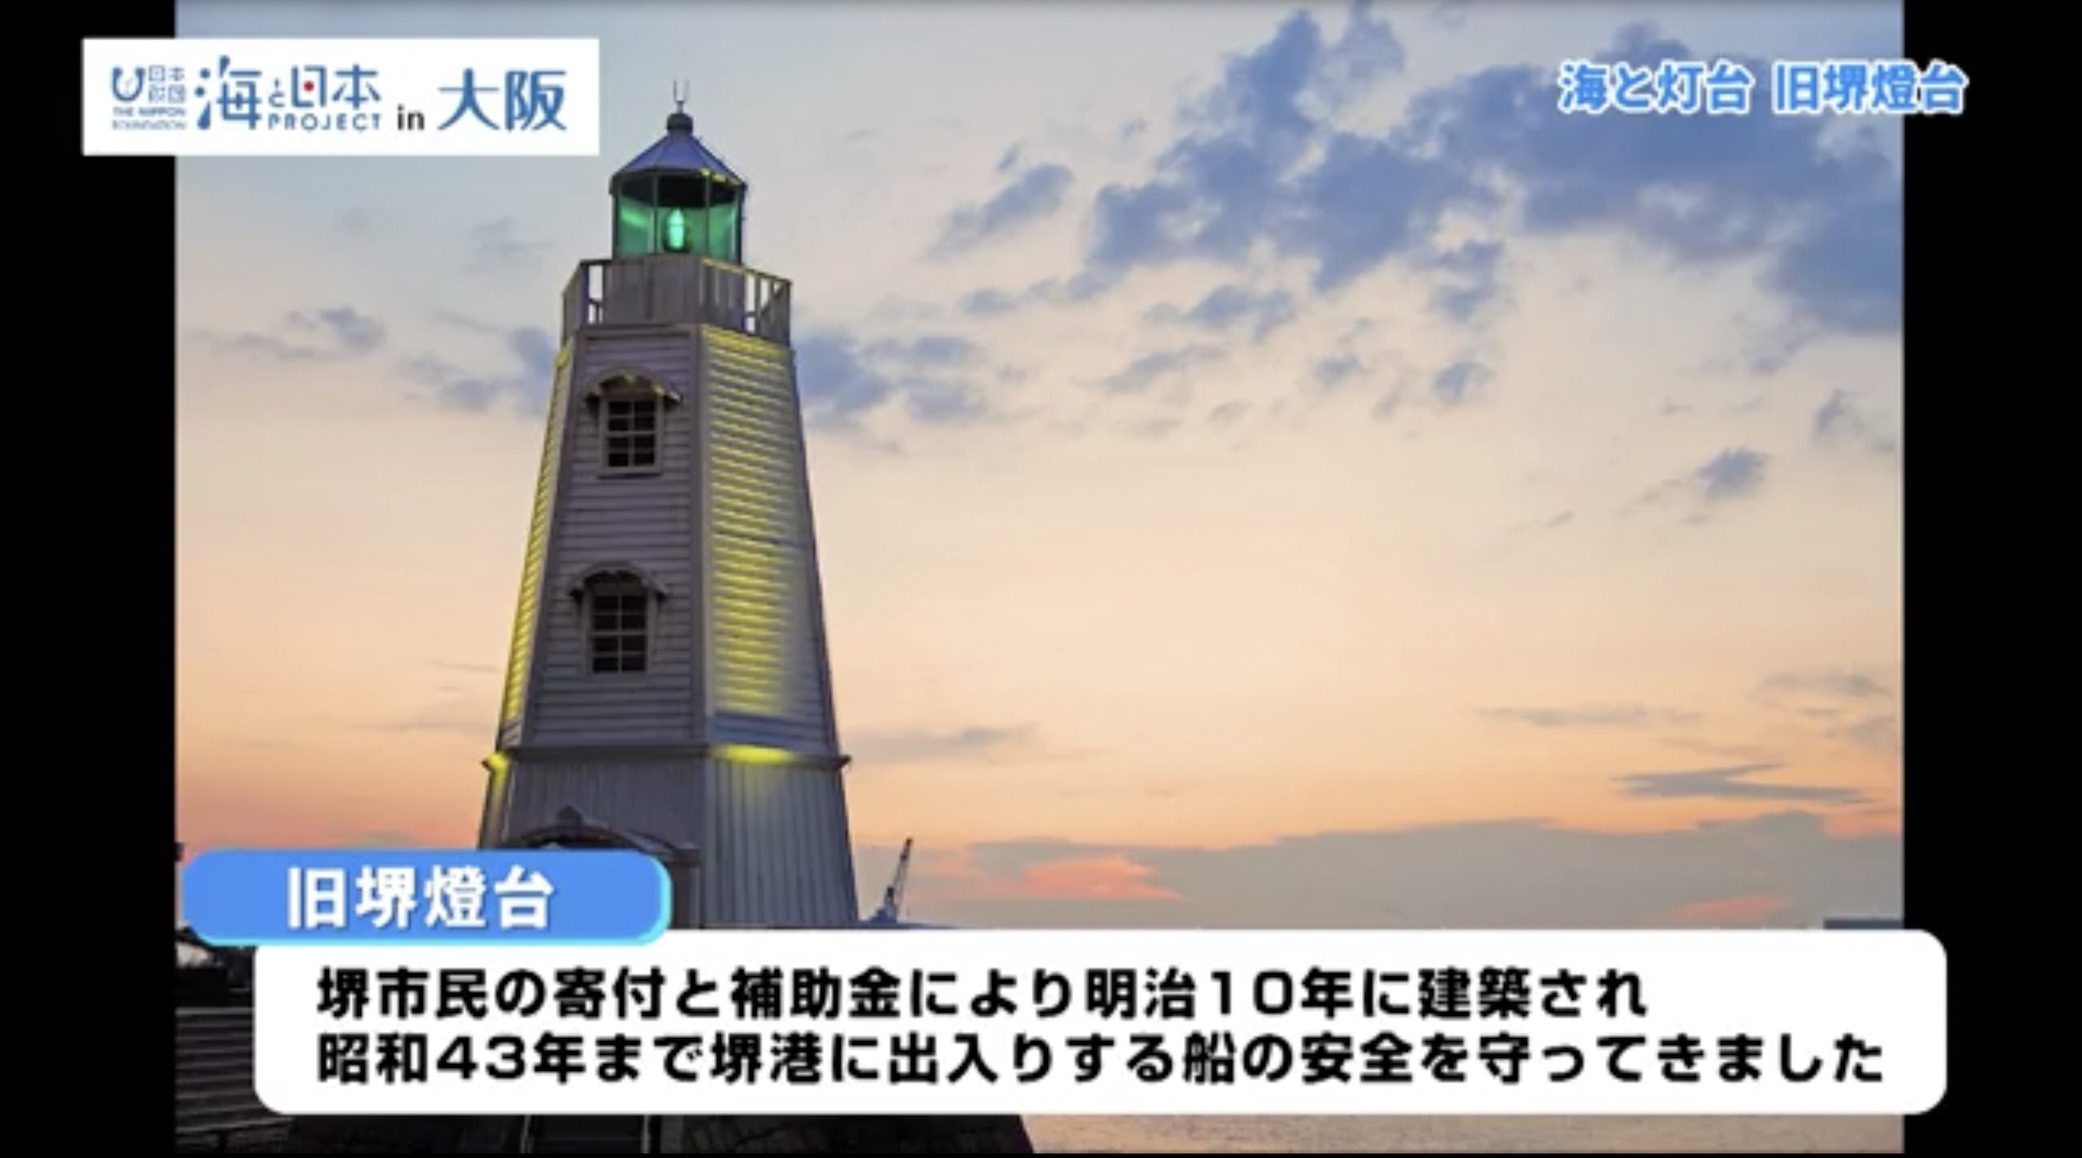 日本最古の木造洋式灯台の1つが未来へ伝える先人たちの心意気 【大阪府堺市 旧堺燈台】 | 海と灯台プロジェクト